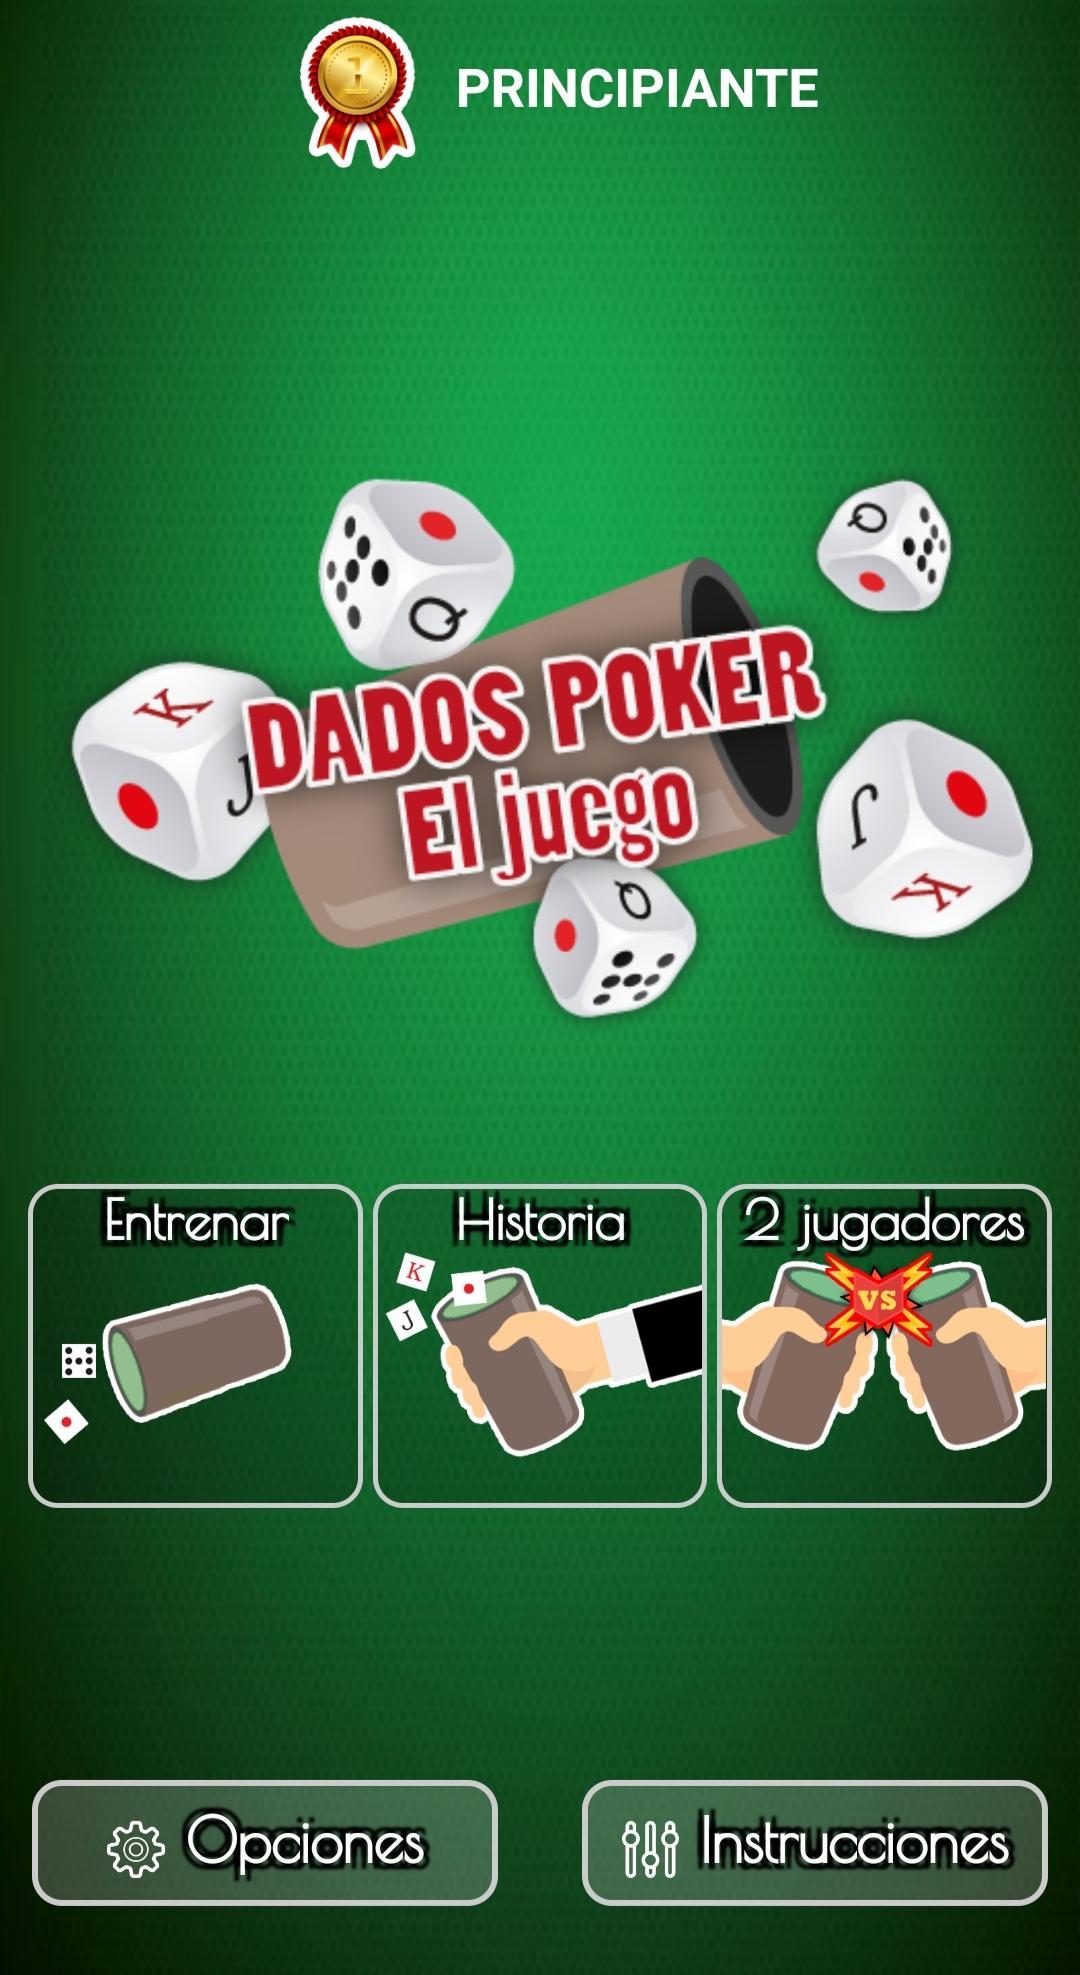 Beaker: dice game -1 or 2 players 88.0.0 Screenshot 1